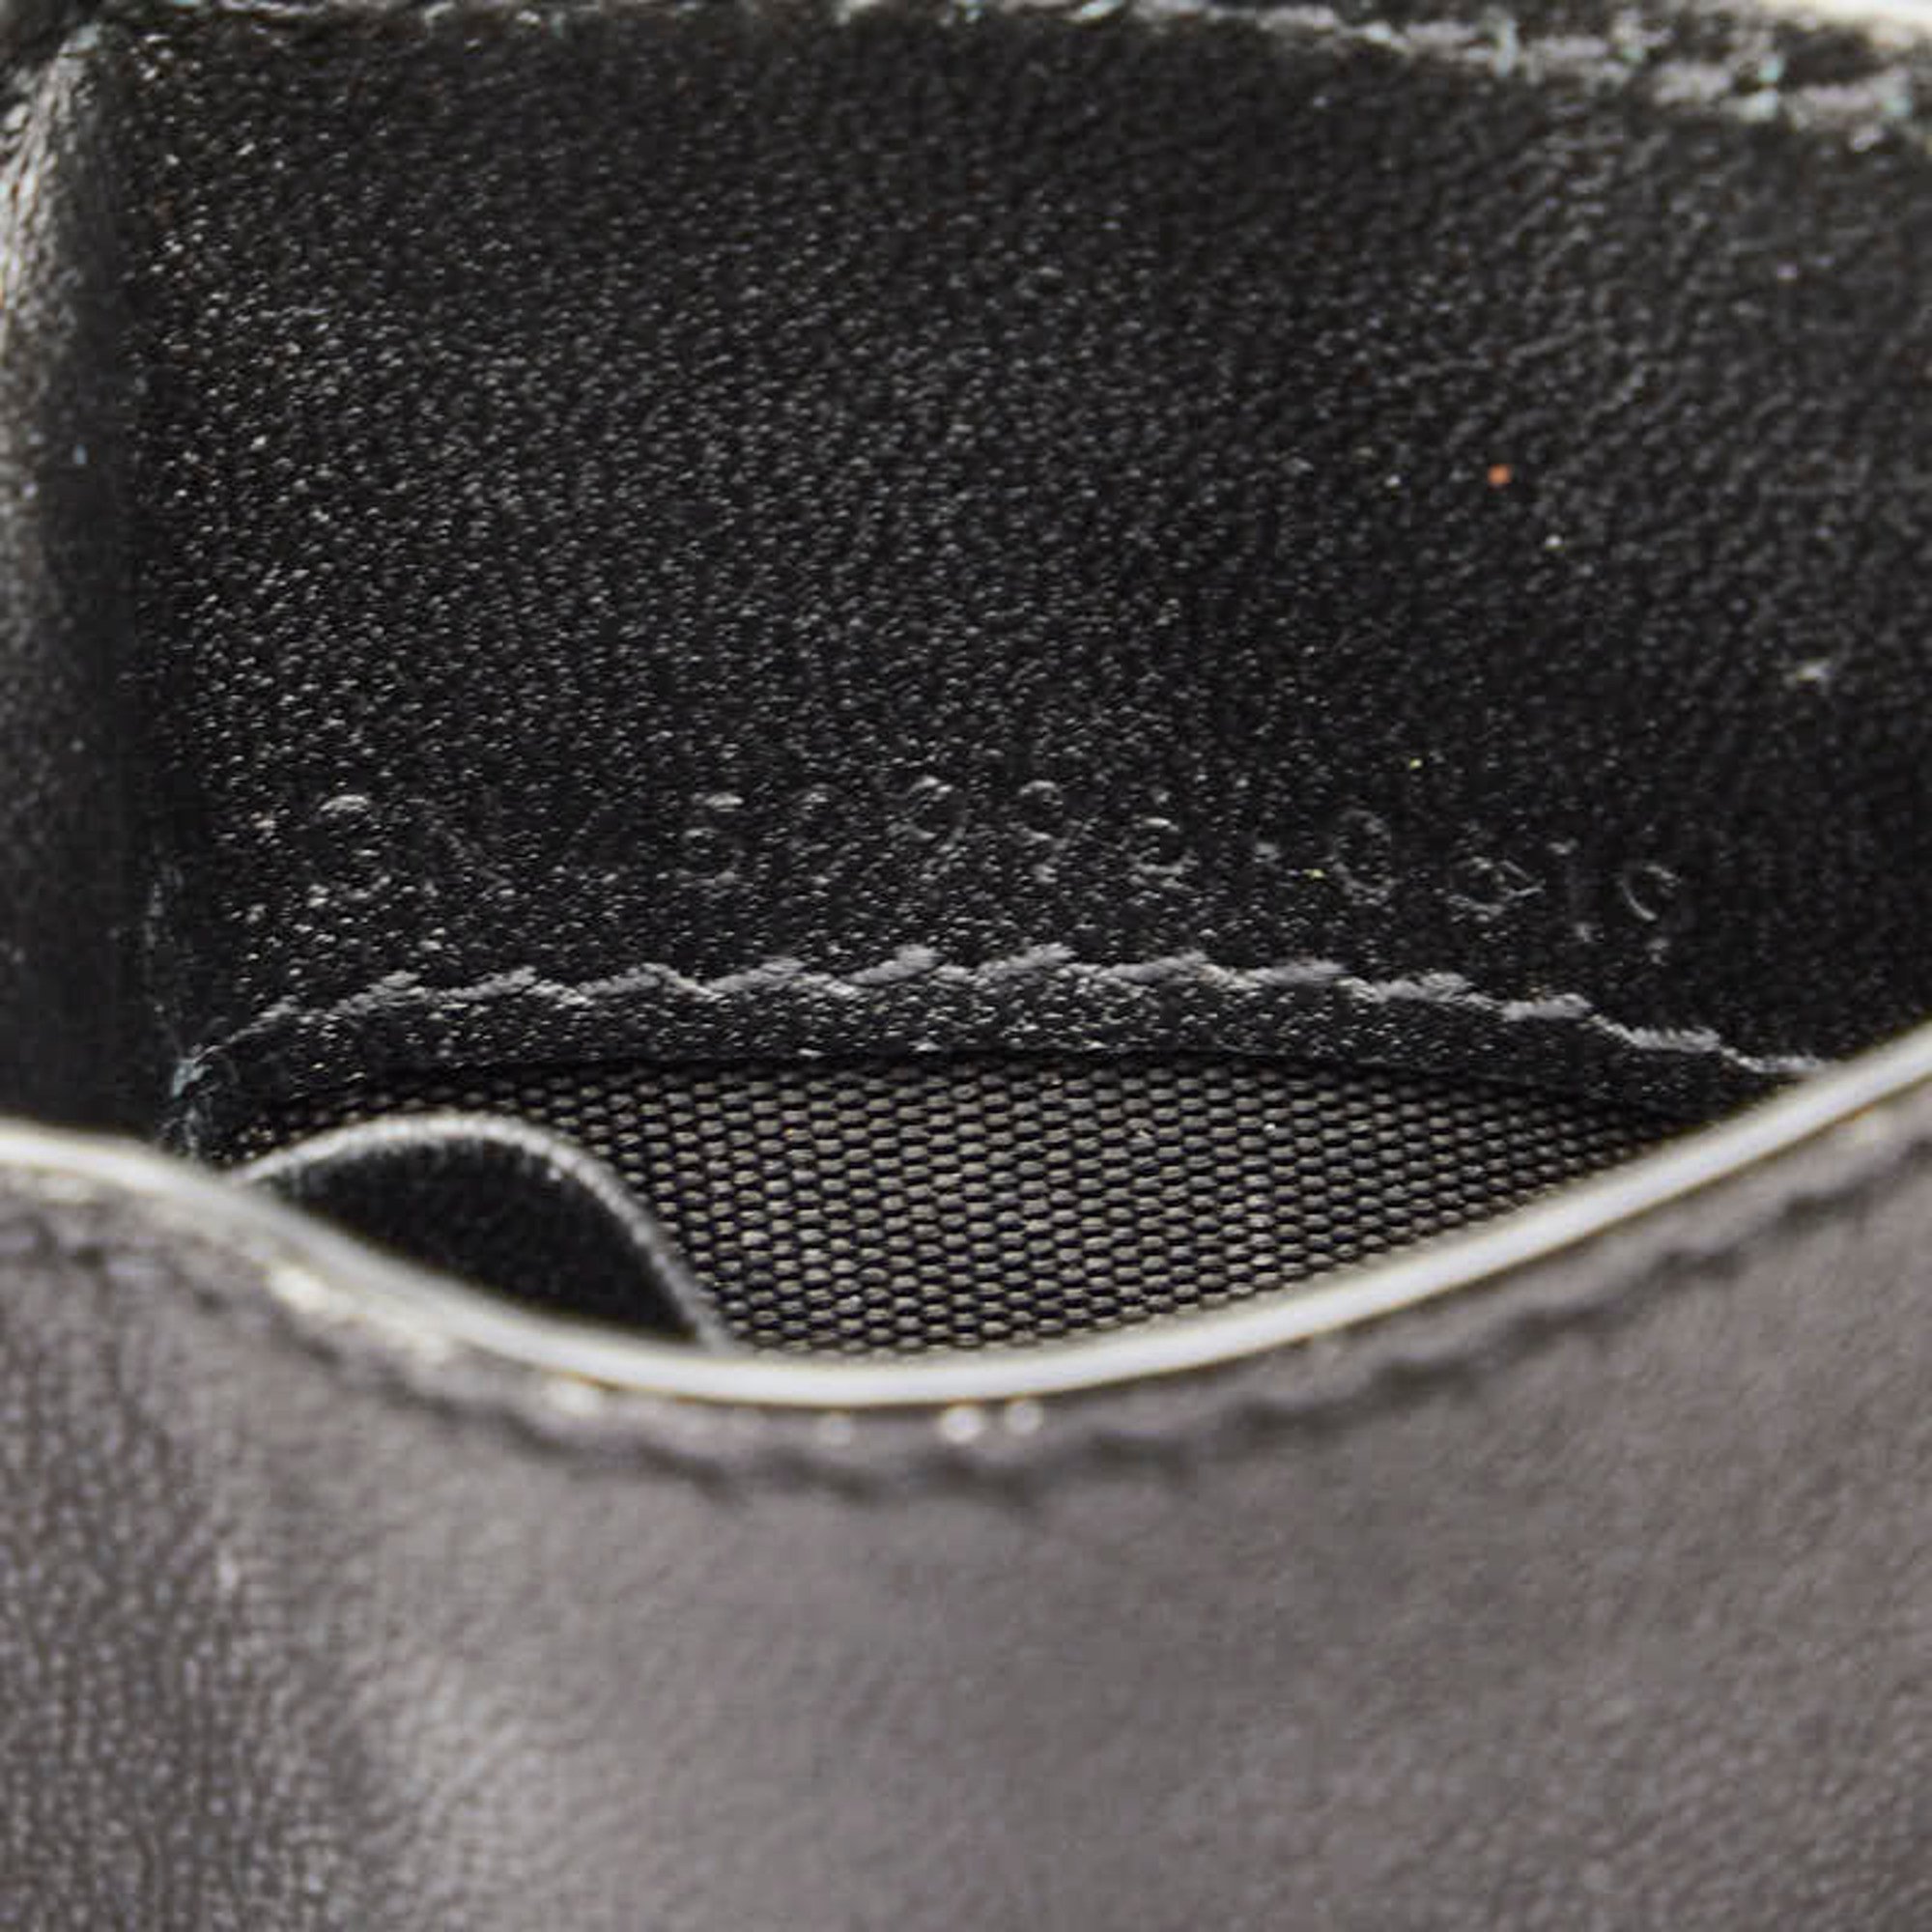 Saint Laurent Trifold Compact Wallet Bi-fold Black Leather Women's SAINT LAURENT